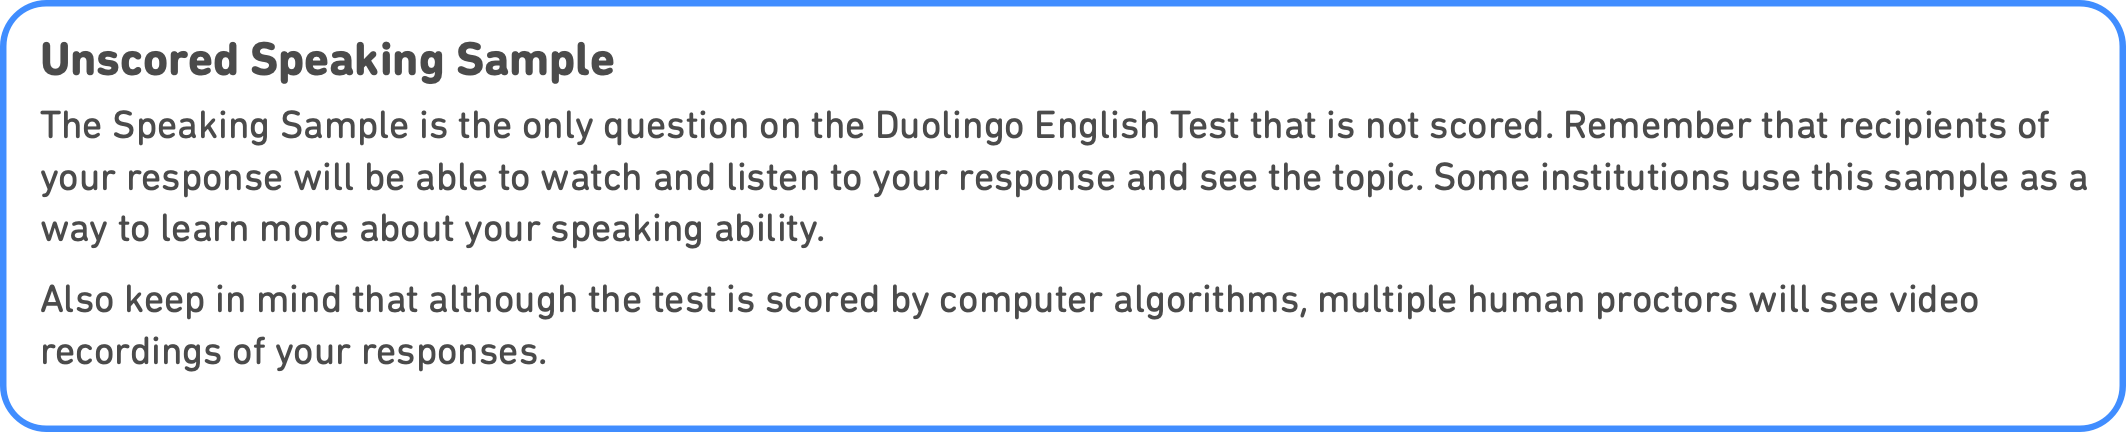 Duolingo question scored explanation, det practice platform, Duolingo Test preparation, question types explain